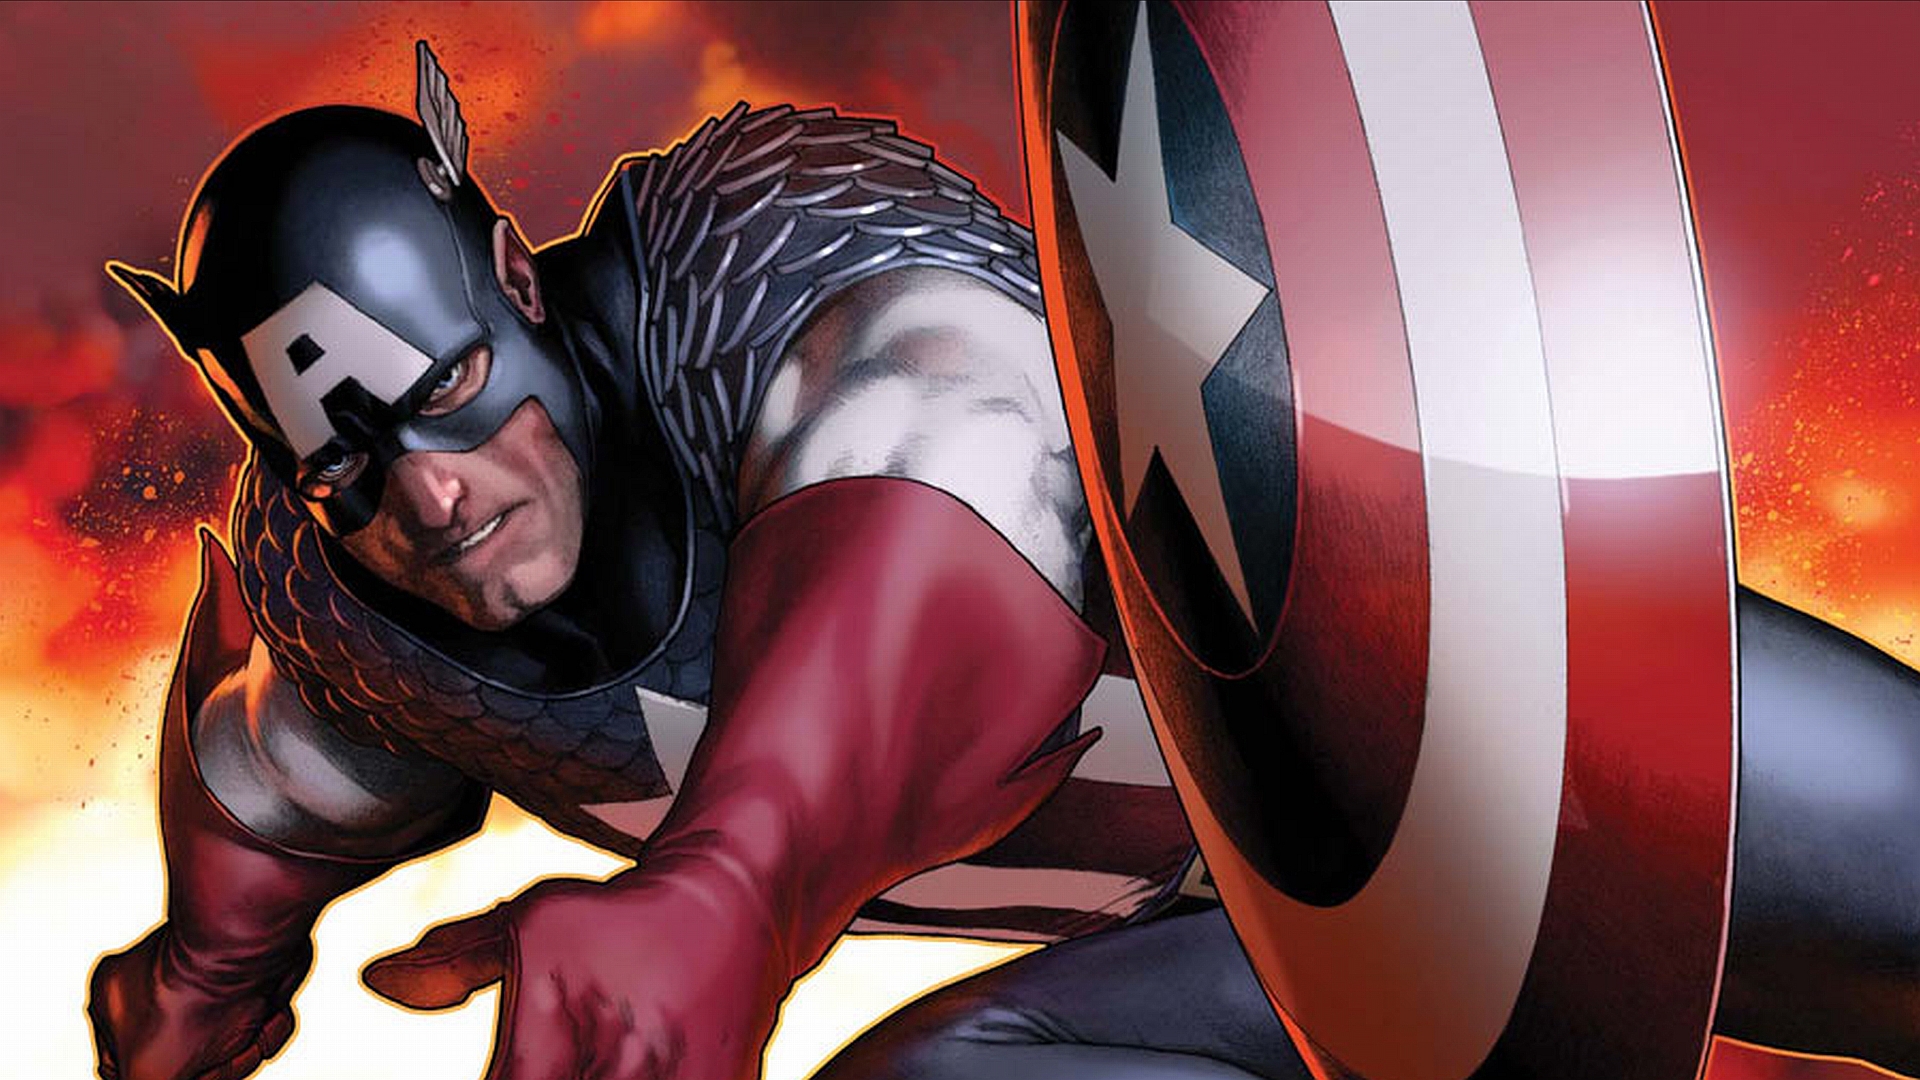 キャプテンアメリカデスクトップ壁紙,スーパーヒーロー,架空の人物,キャプテン・アメリカ,漫画,cgアートワーク